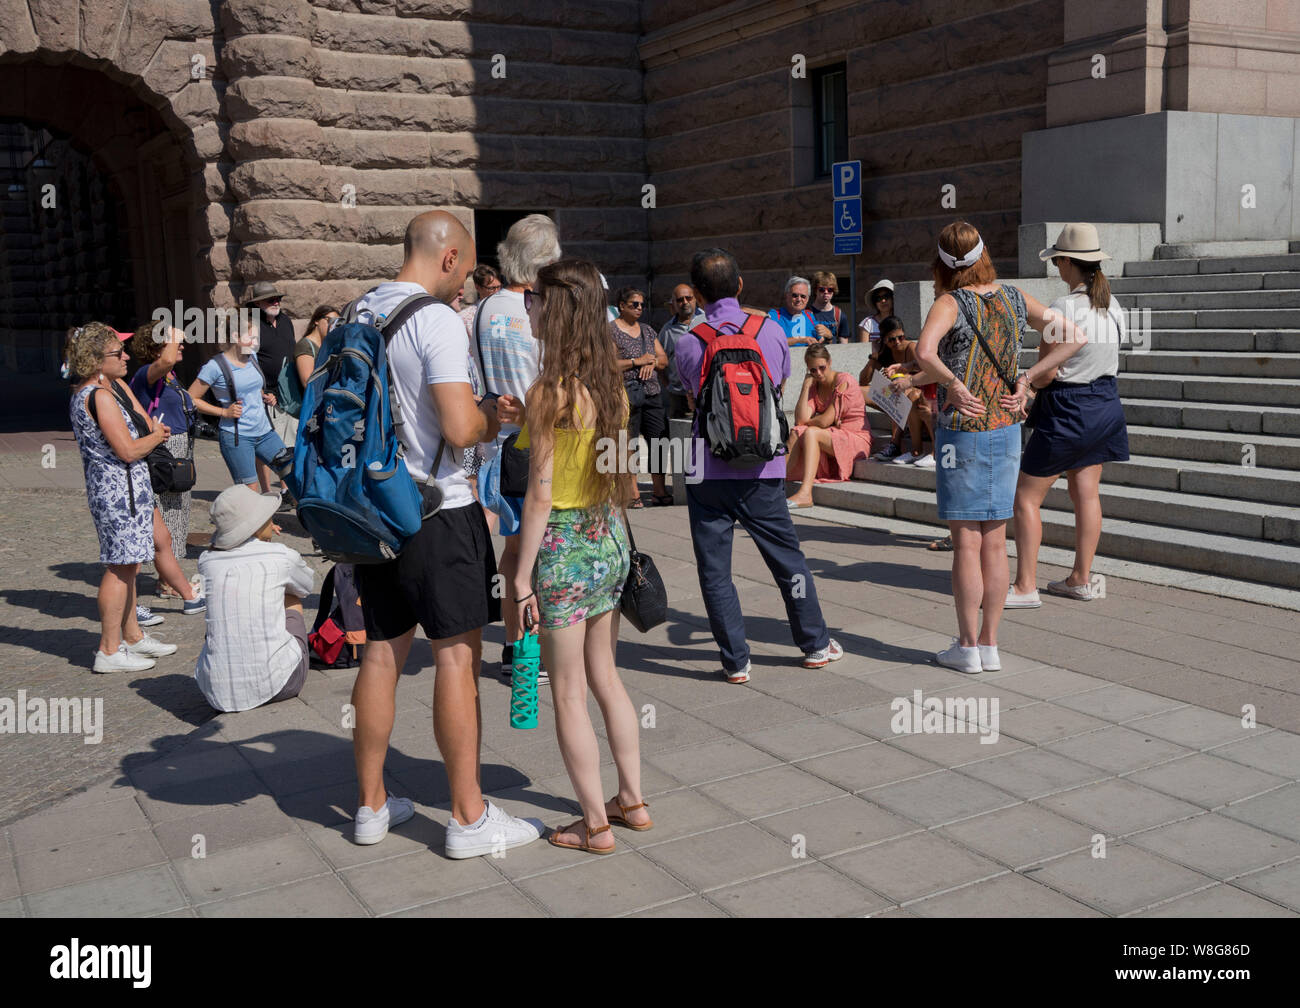 Les touristes visitant le Palais Royal de Stockholm, suédois Banque D'Images